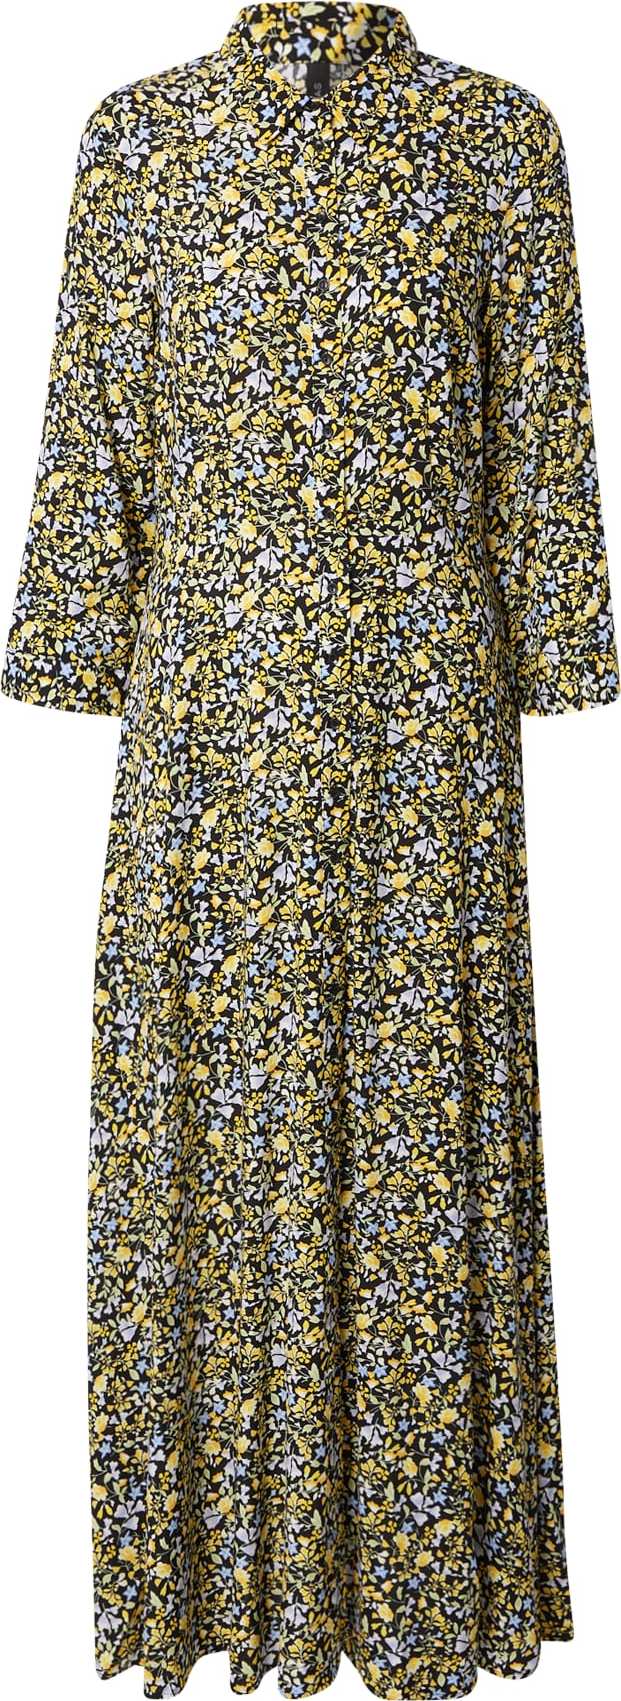 Y.A.S Košilové šaty 'Savanna' světlemodrá / žlutá / černá / bílá